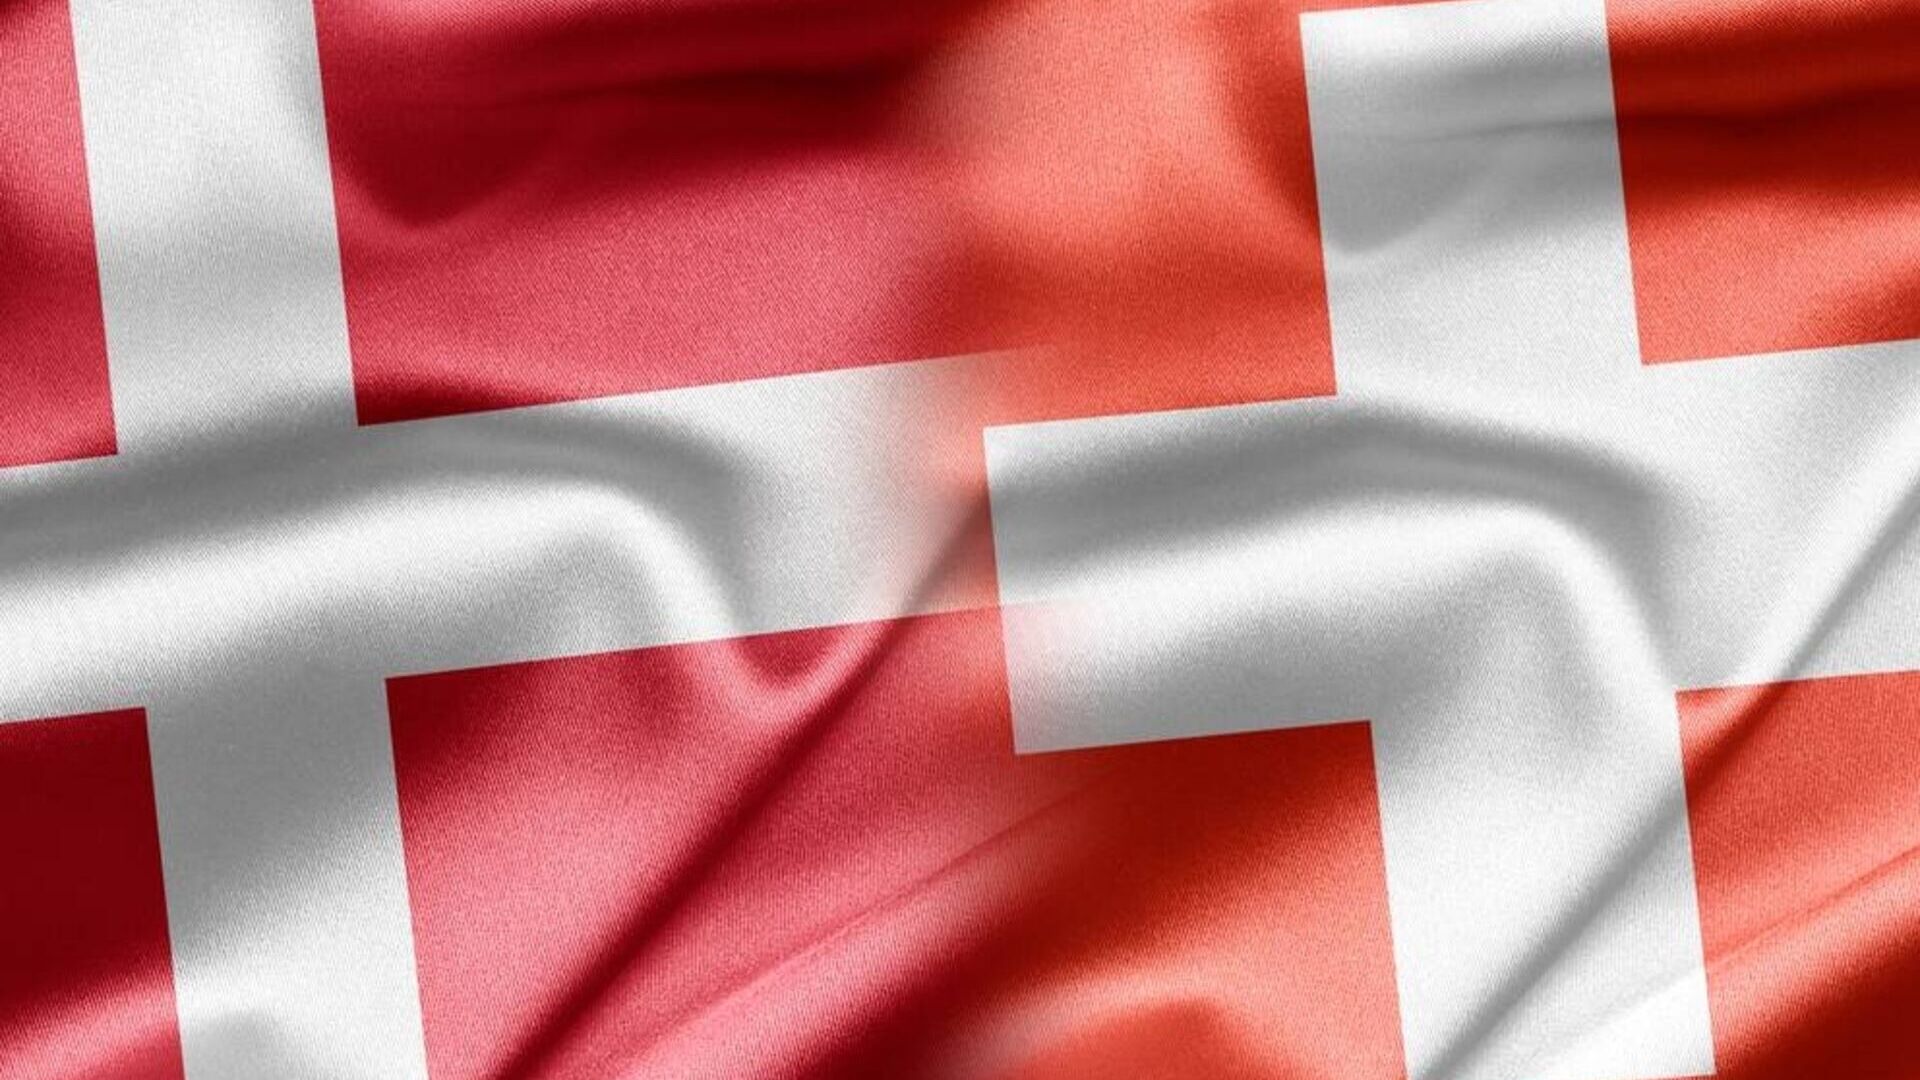 შვეიცარია დანია: გრაფიკული შერწყმა კონფედერაციისა და სამეფოს დროშებს შორის